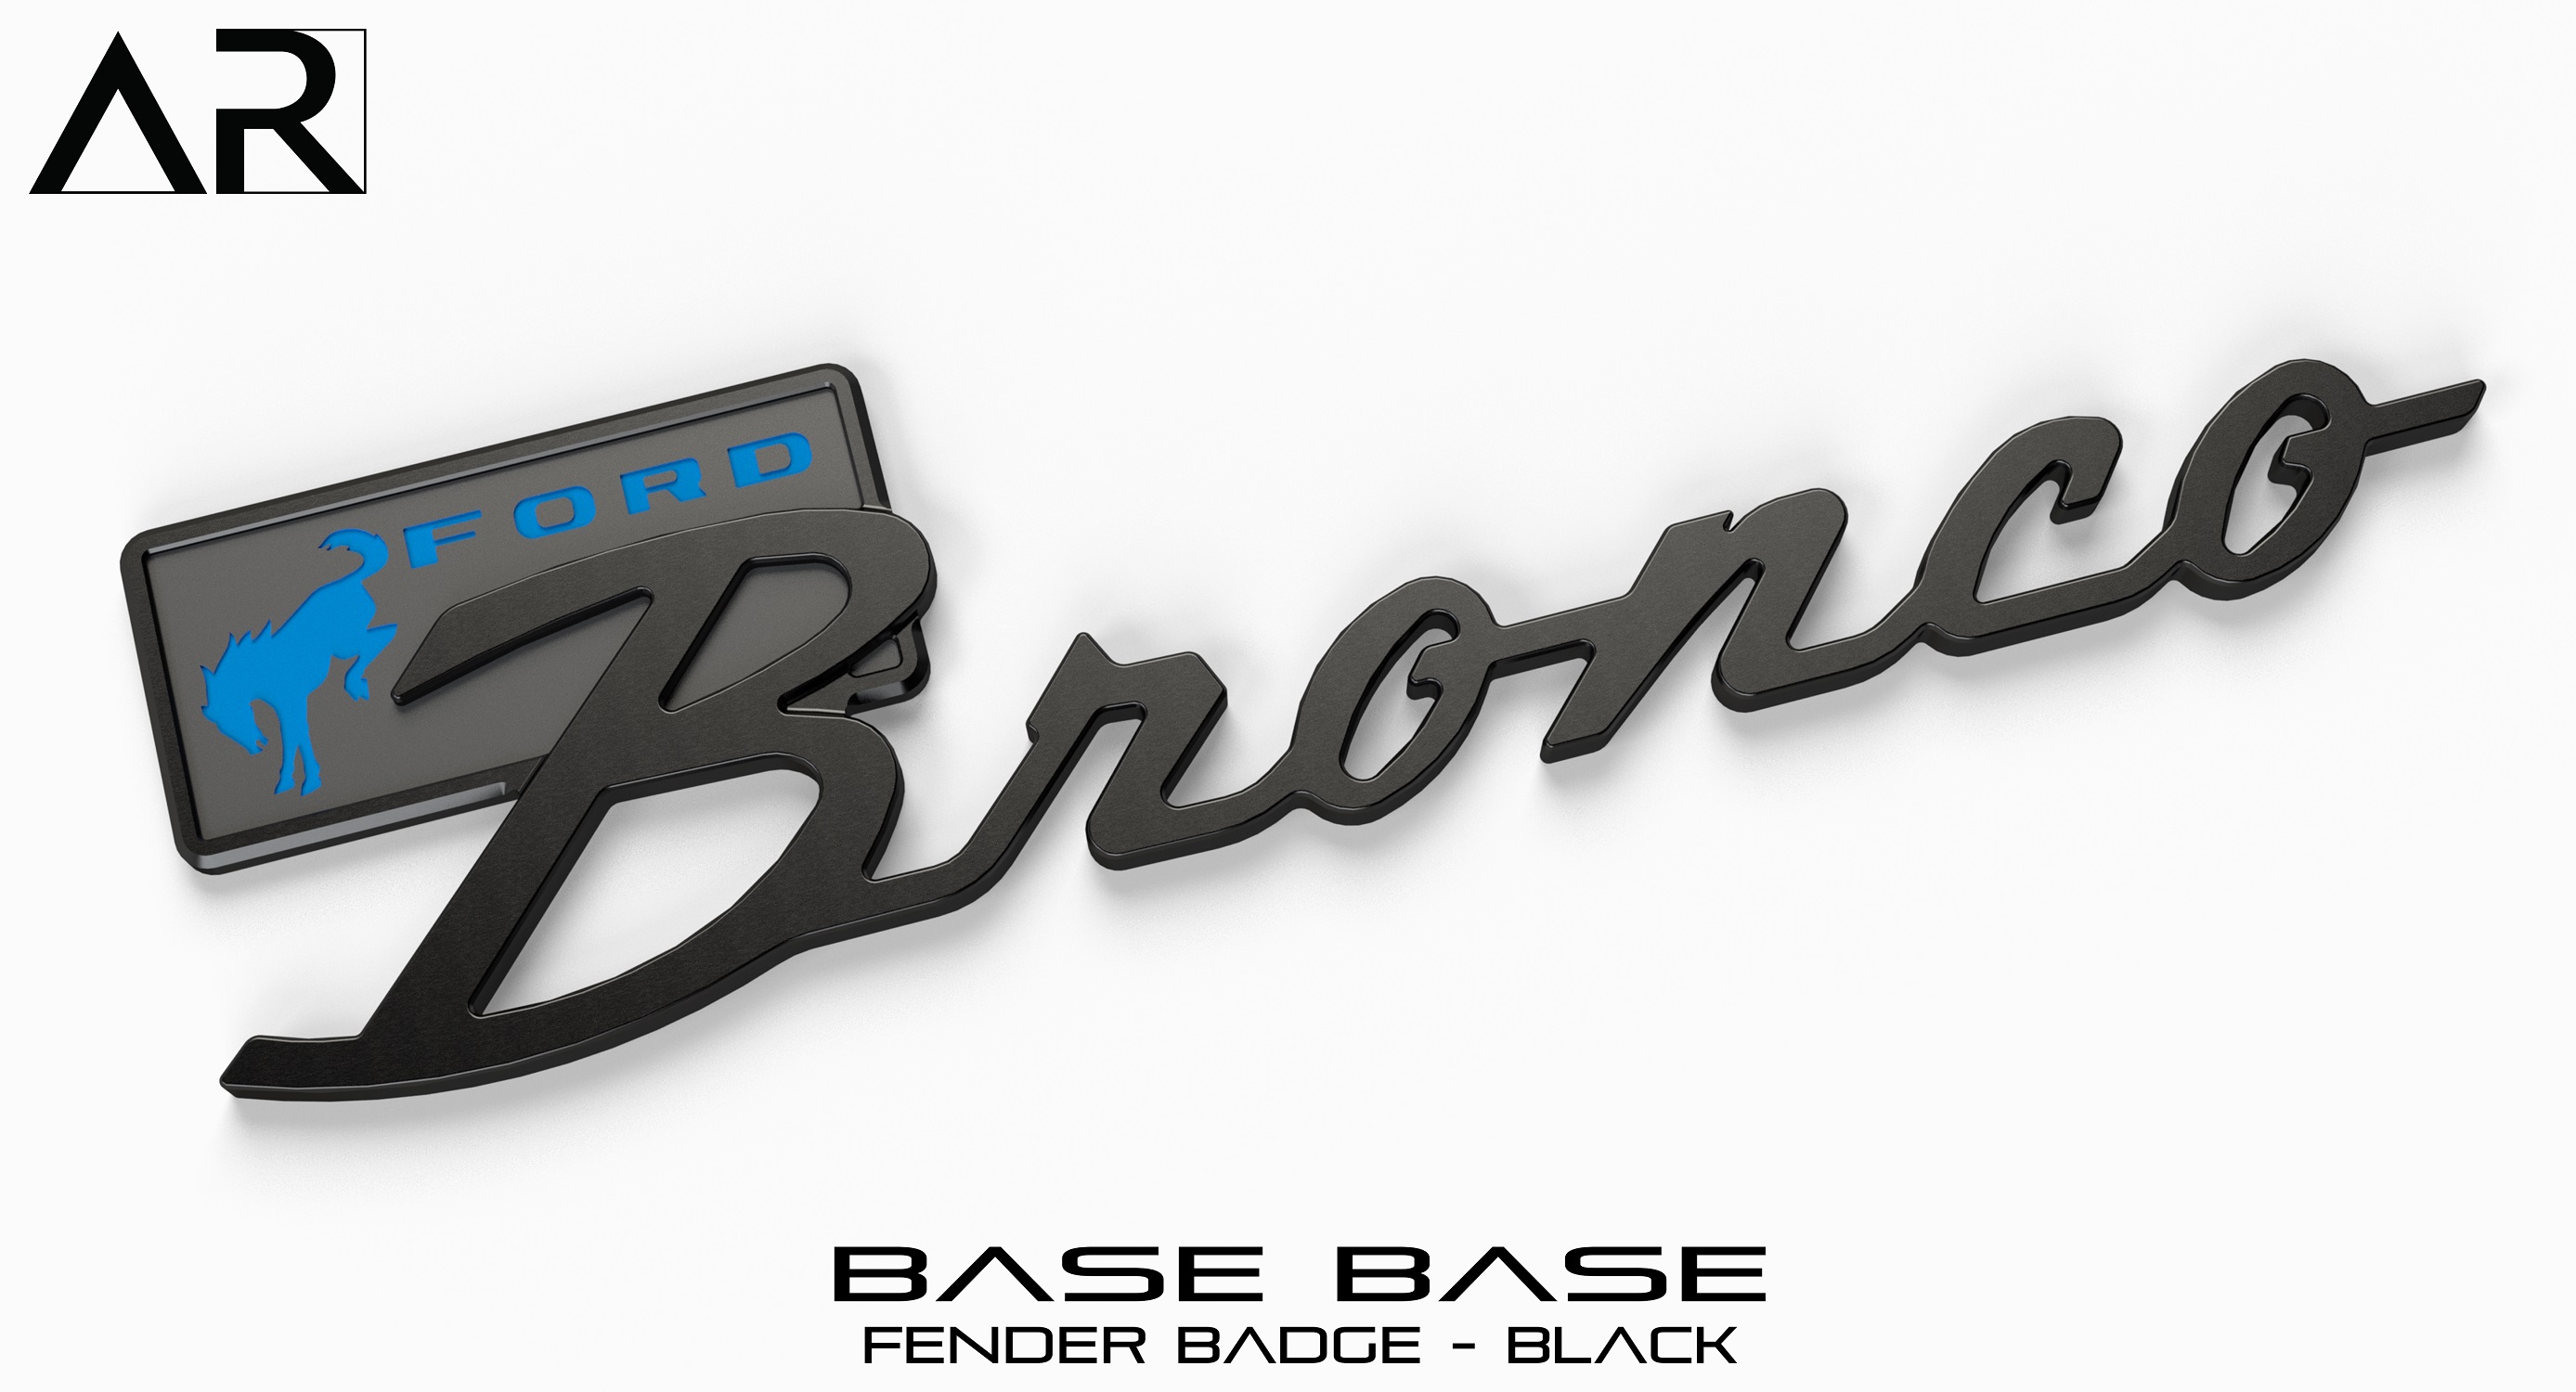 Ford Bronco AR | BRONCO CLASSIC DNA Fender Badge 16010012 - Fender Badge - Base Base - Black